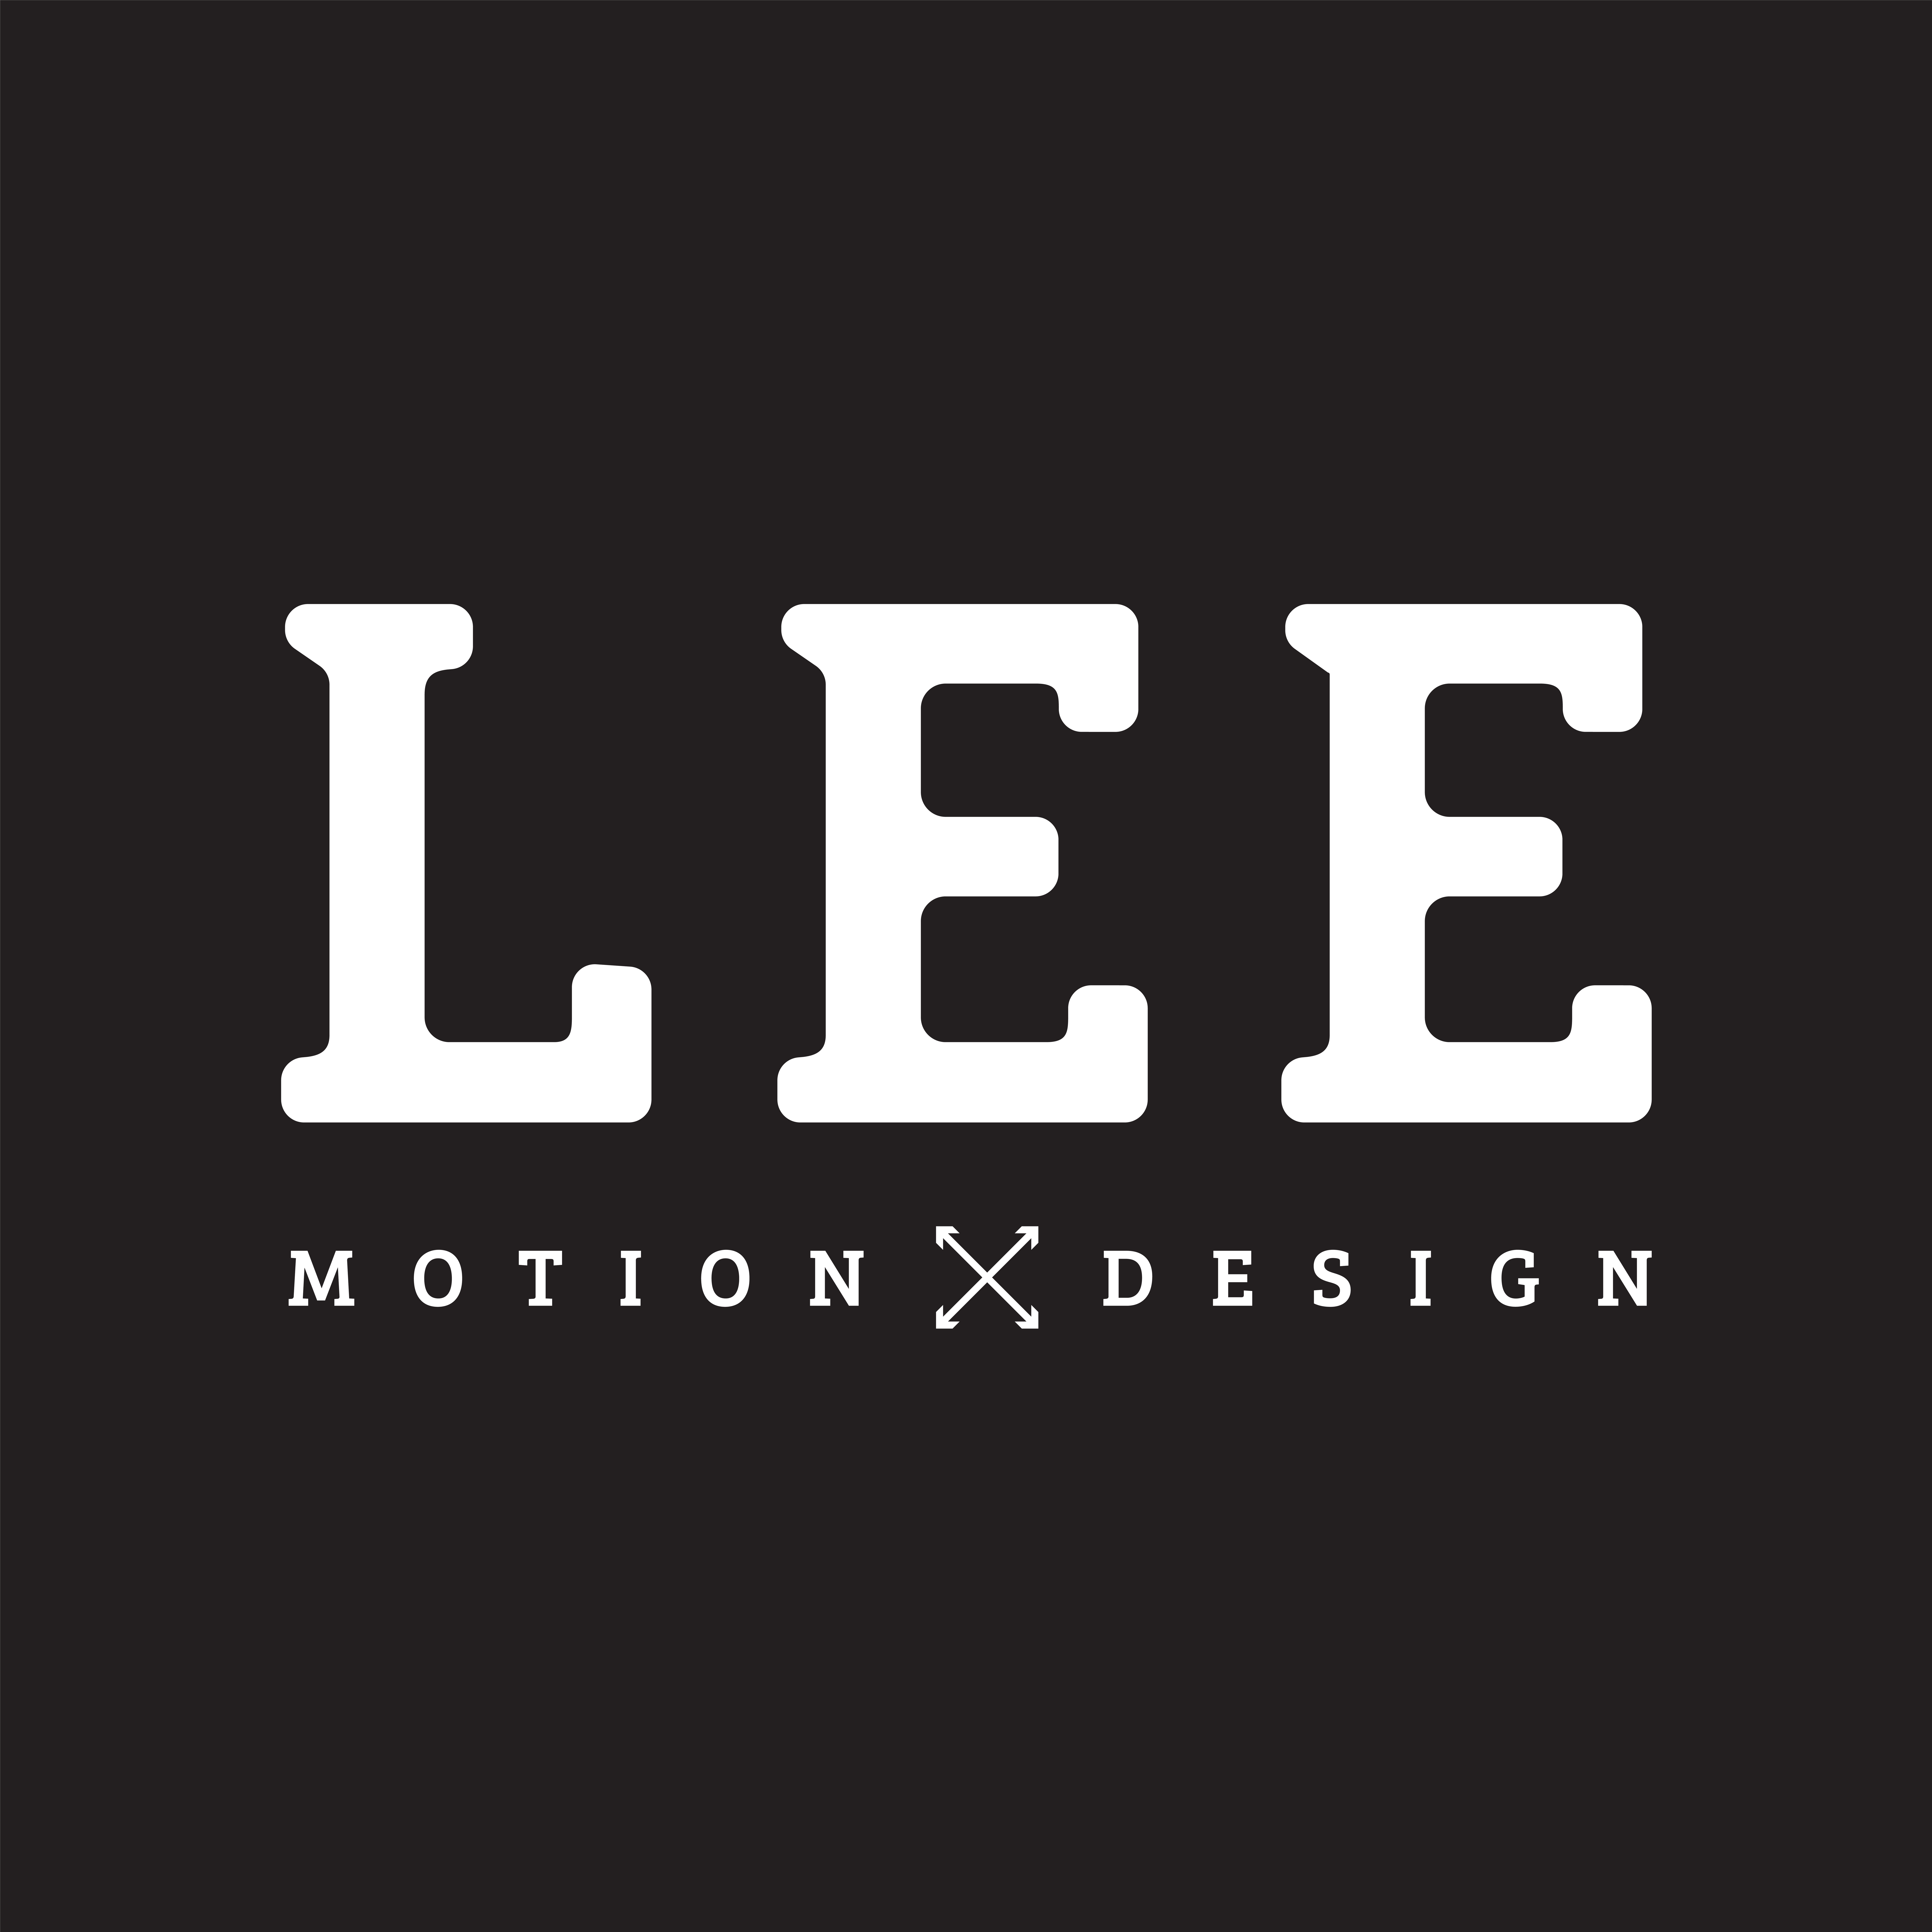 LEE MOTION X DESIGN